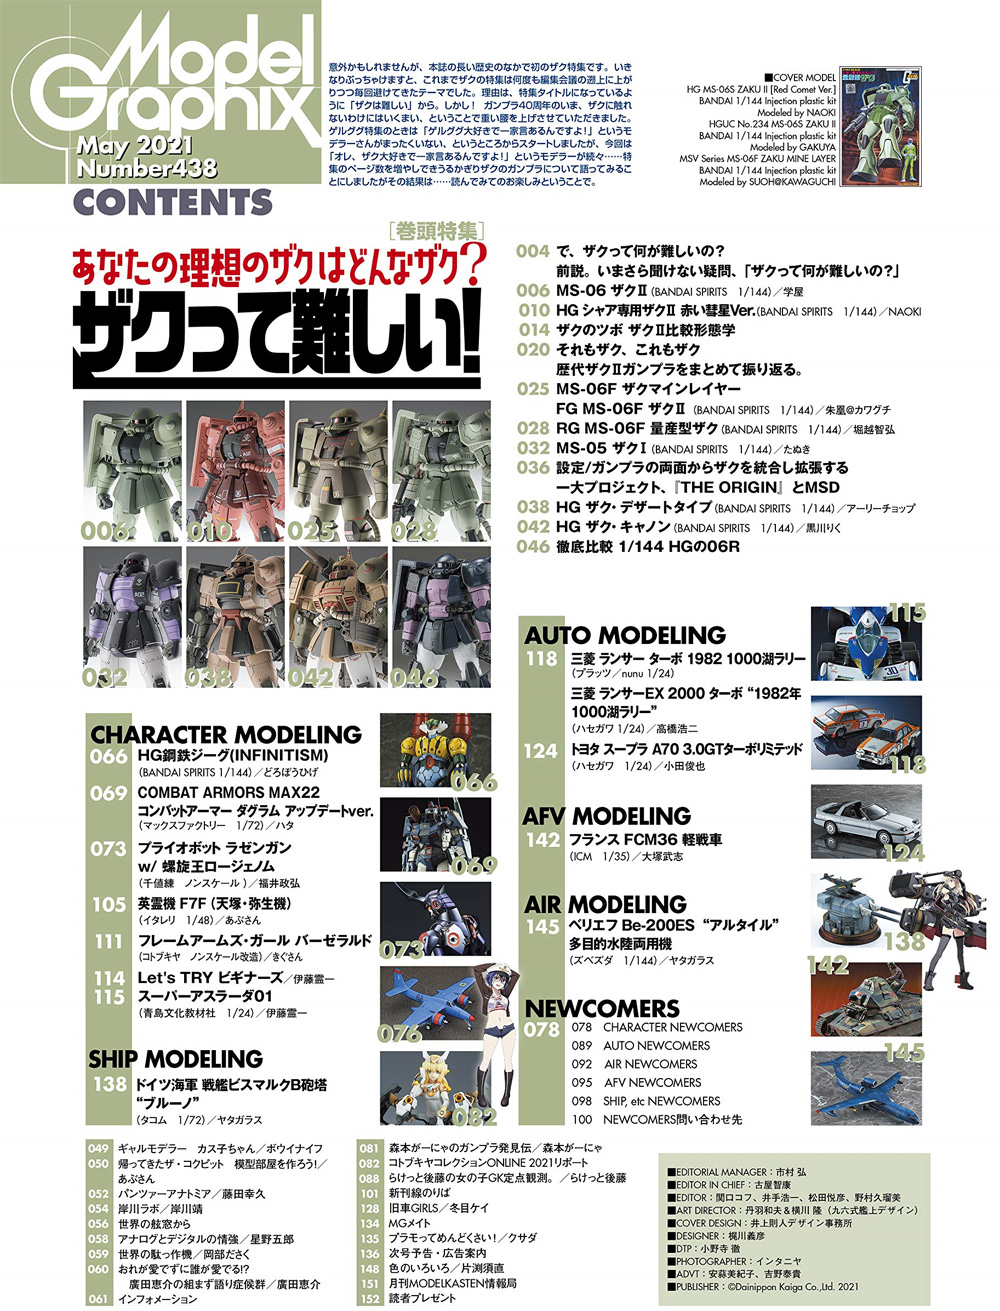 モデルグラフィックス 2021年5月号 雑誌 (大日本絵画 月刊 モデルグラフィックス No.438) 商品画像_1